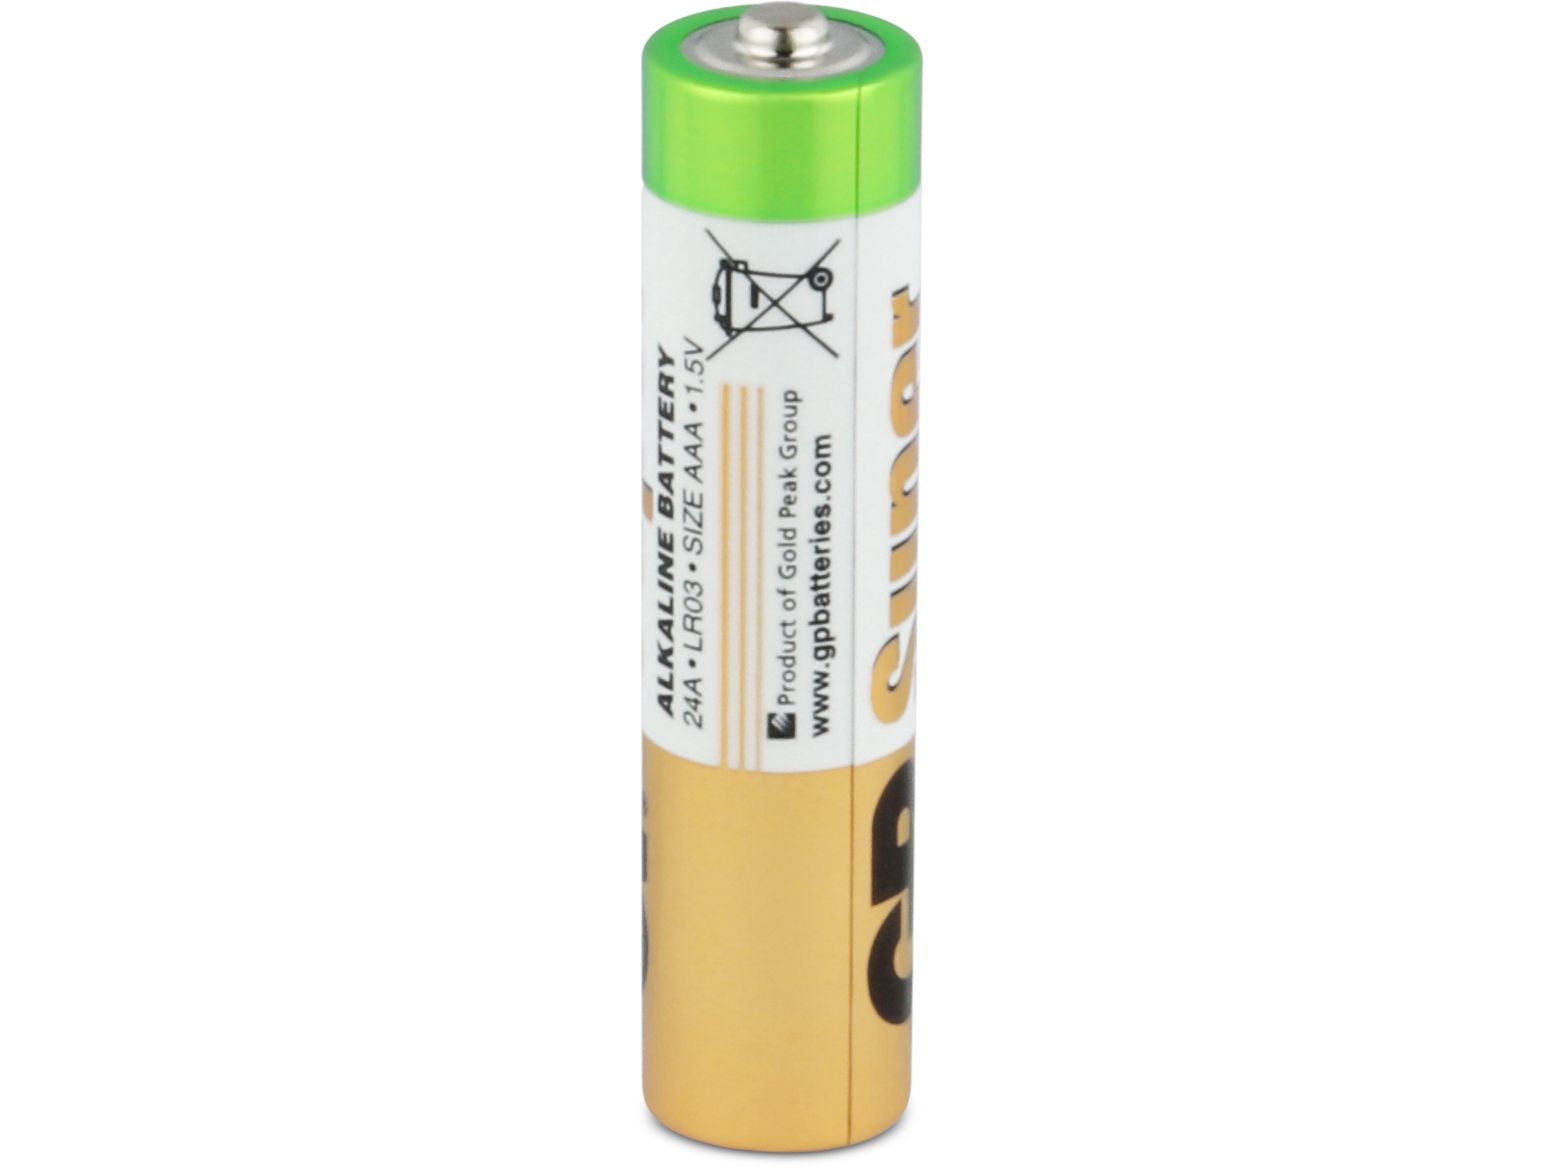 80x-gp-aa-alkaline-super-batterij-15-v